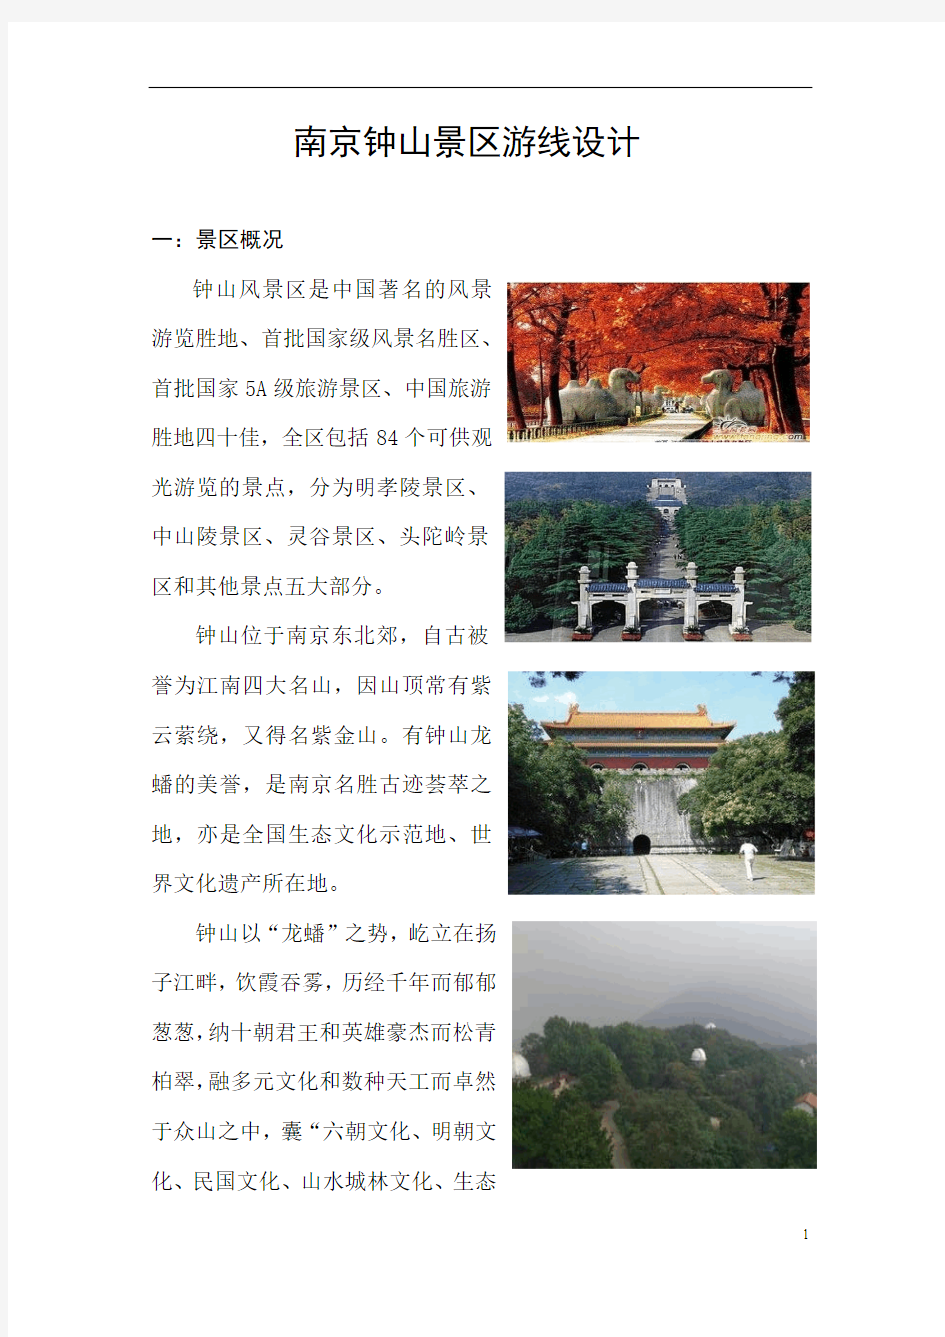 南京钟山景区旅游路线设计